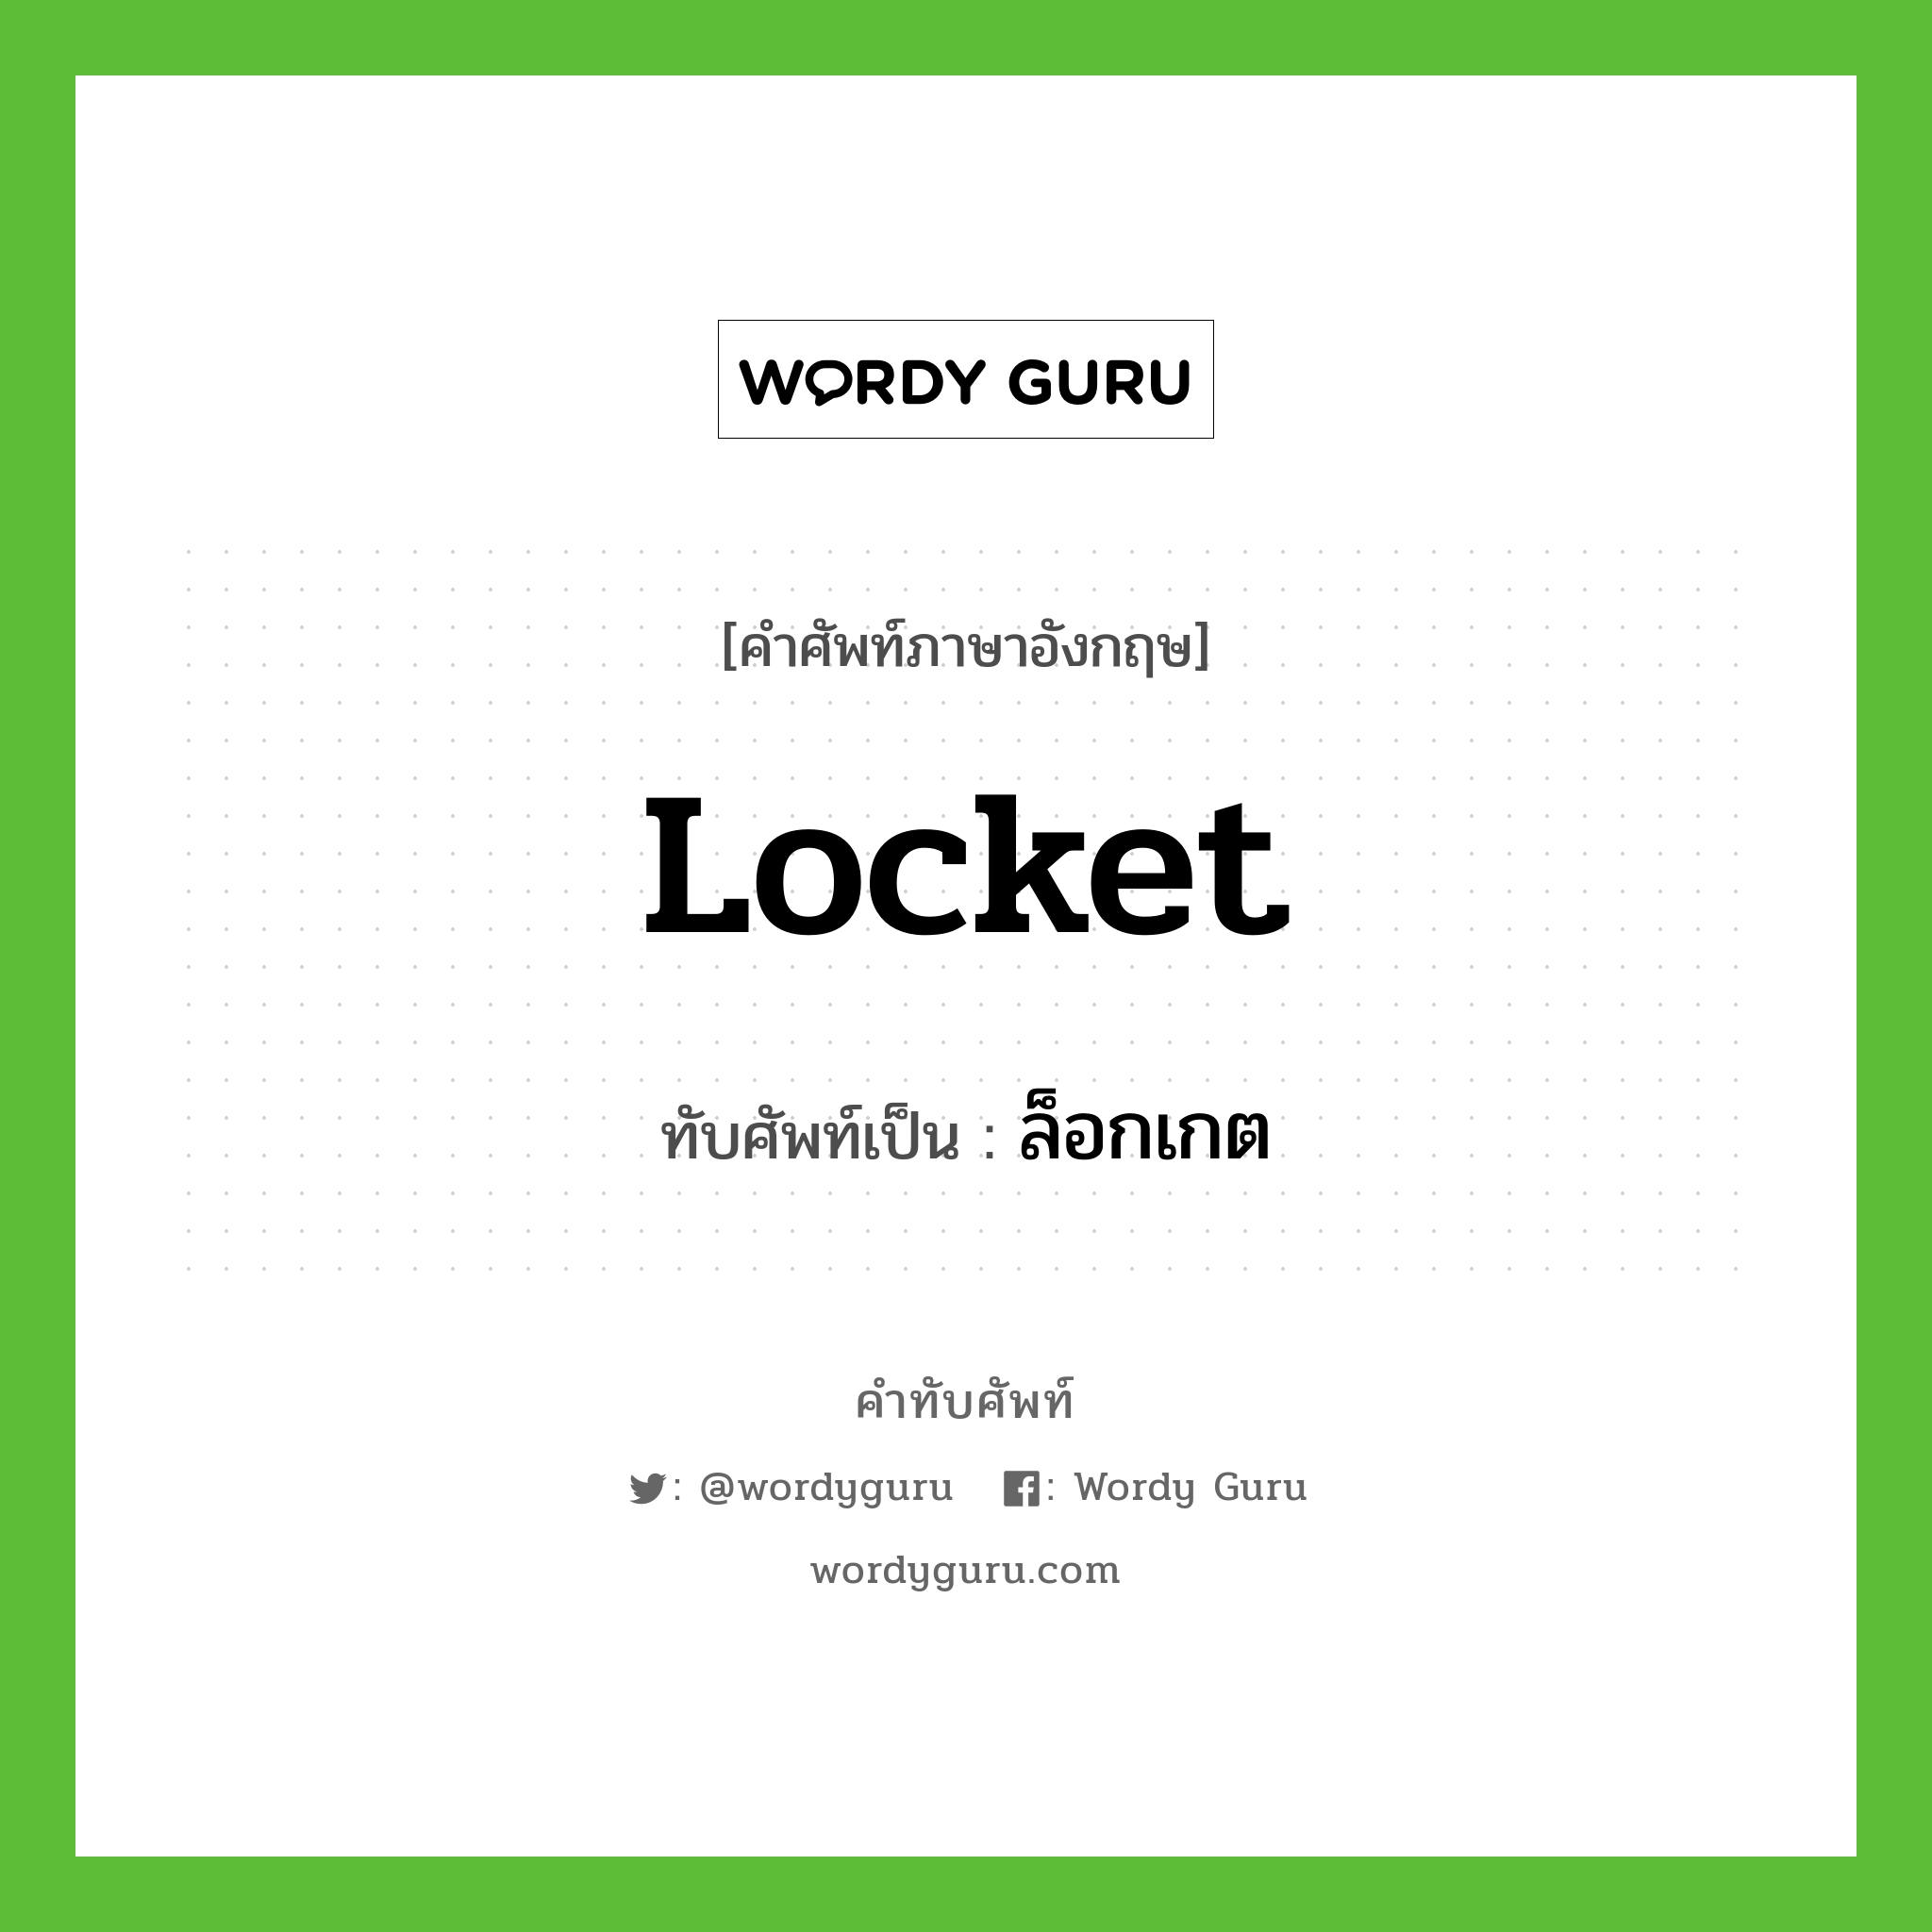 locket เขียนเป็นคำไทยว่าอะไร?, คำศัพท์ภาษาอังกฤษ locket ทับศัพท์เป็น ล็อกเกต